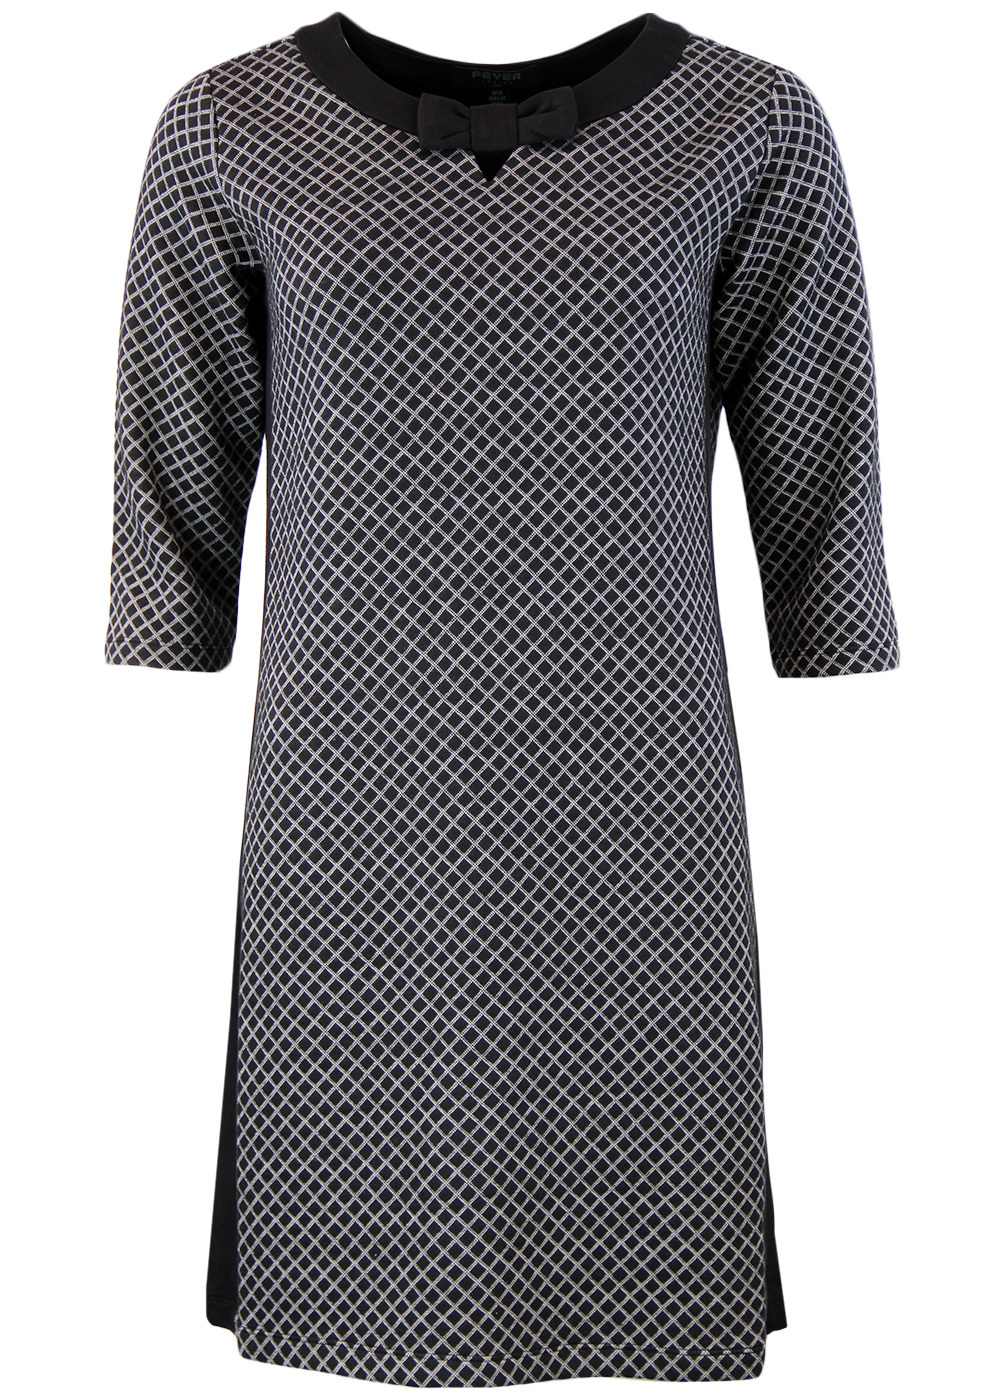 FEVER Lori Retro 1960s Mod Square Geo Bow Dress in Black